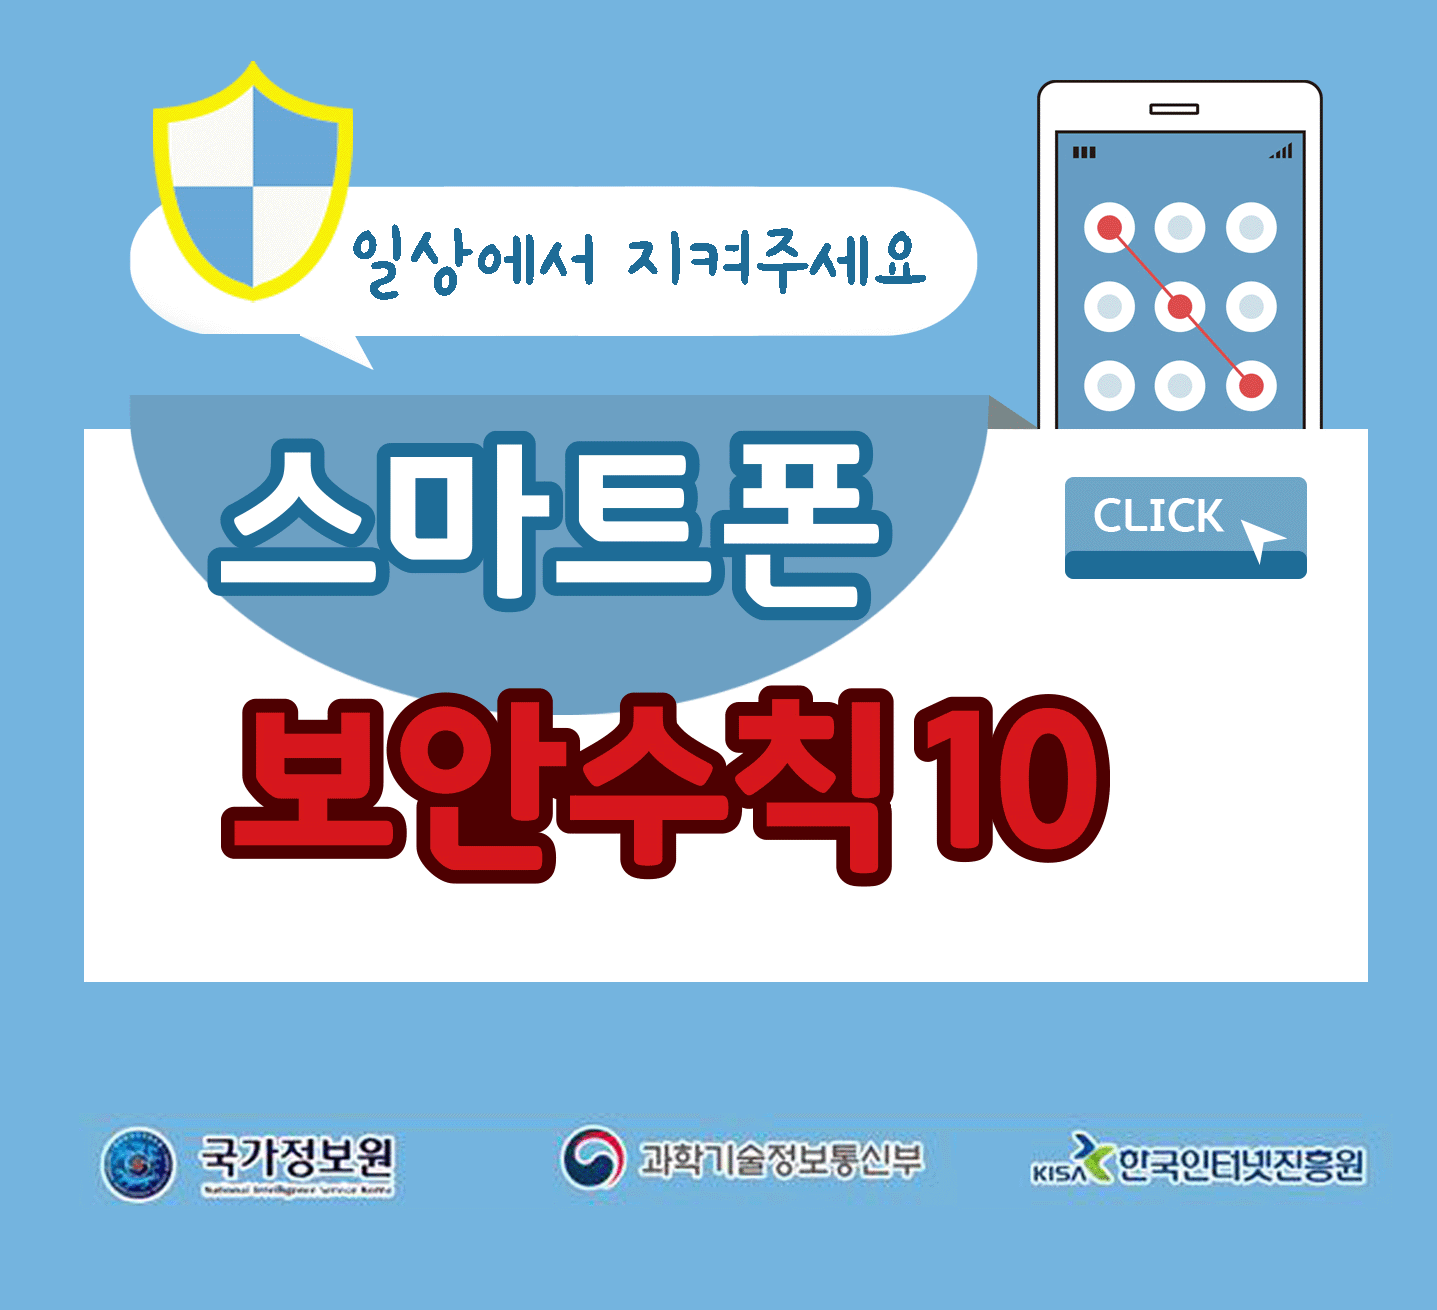 일상에서 지켜주세요
스마트폰 보안수칙 10 CLICK
국가정보원, 과학기술정보통신부, 한국인터넷진흥원;jsessionid=649F8E156FD26D6FD64390A6A92D0B3A